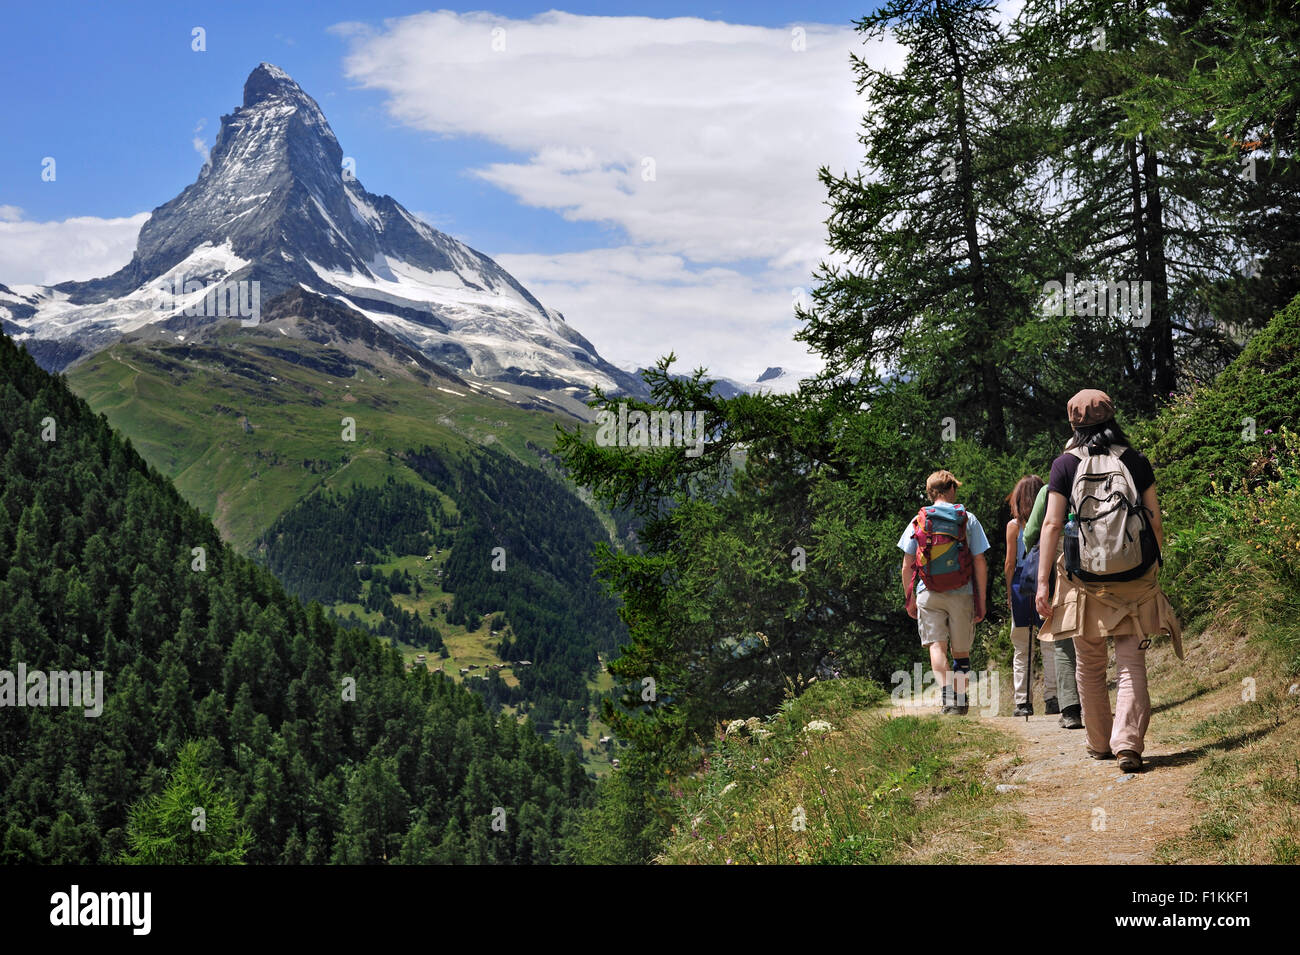 Excursionistas caminando a través del bosque de alerces con vistas a la montaña Matterhorn en los Alpes Suizos, Valais / Wallis, Suiza Foto de stock